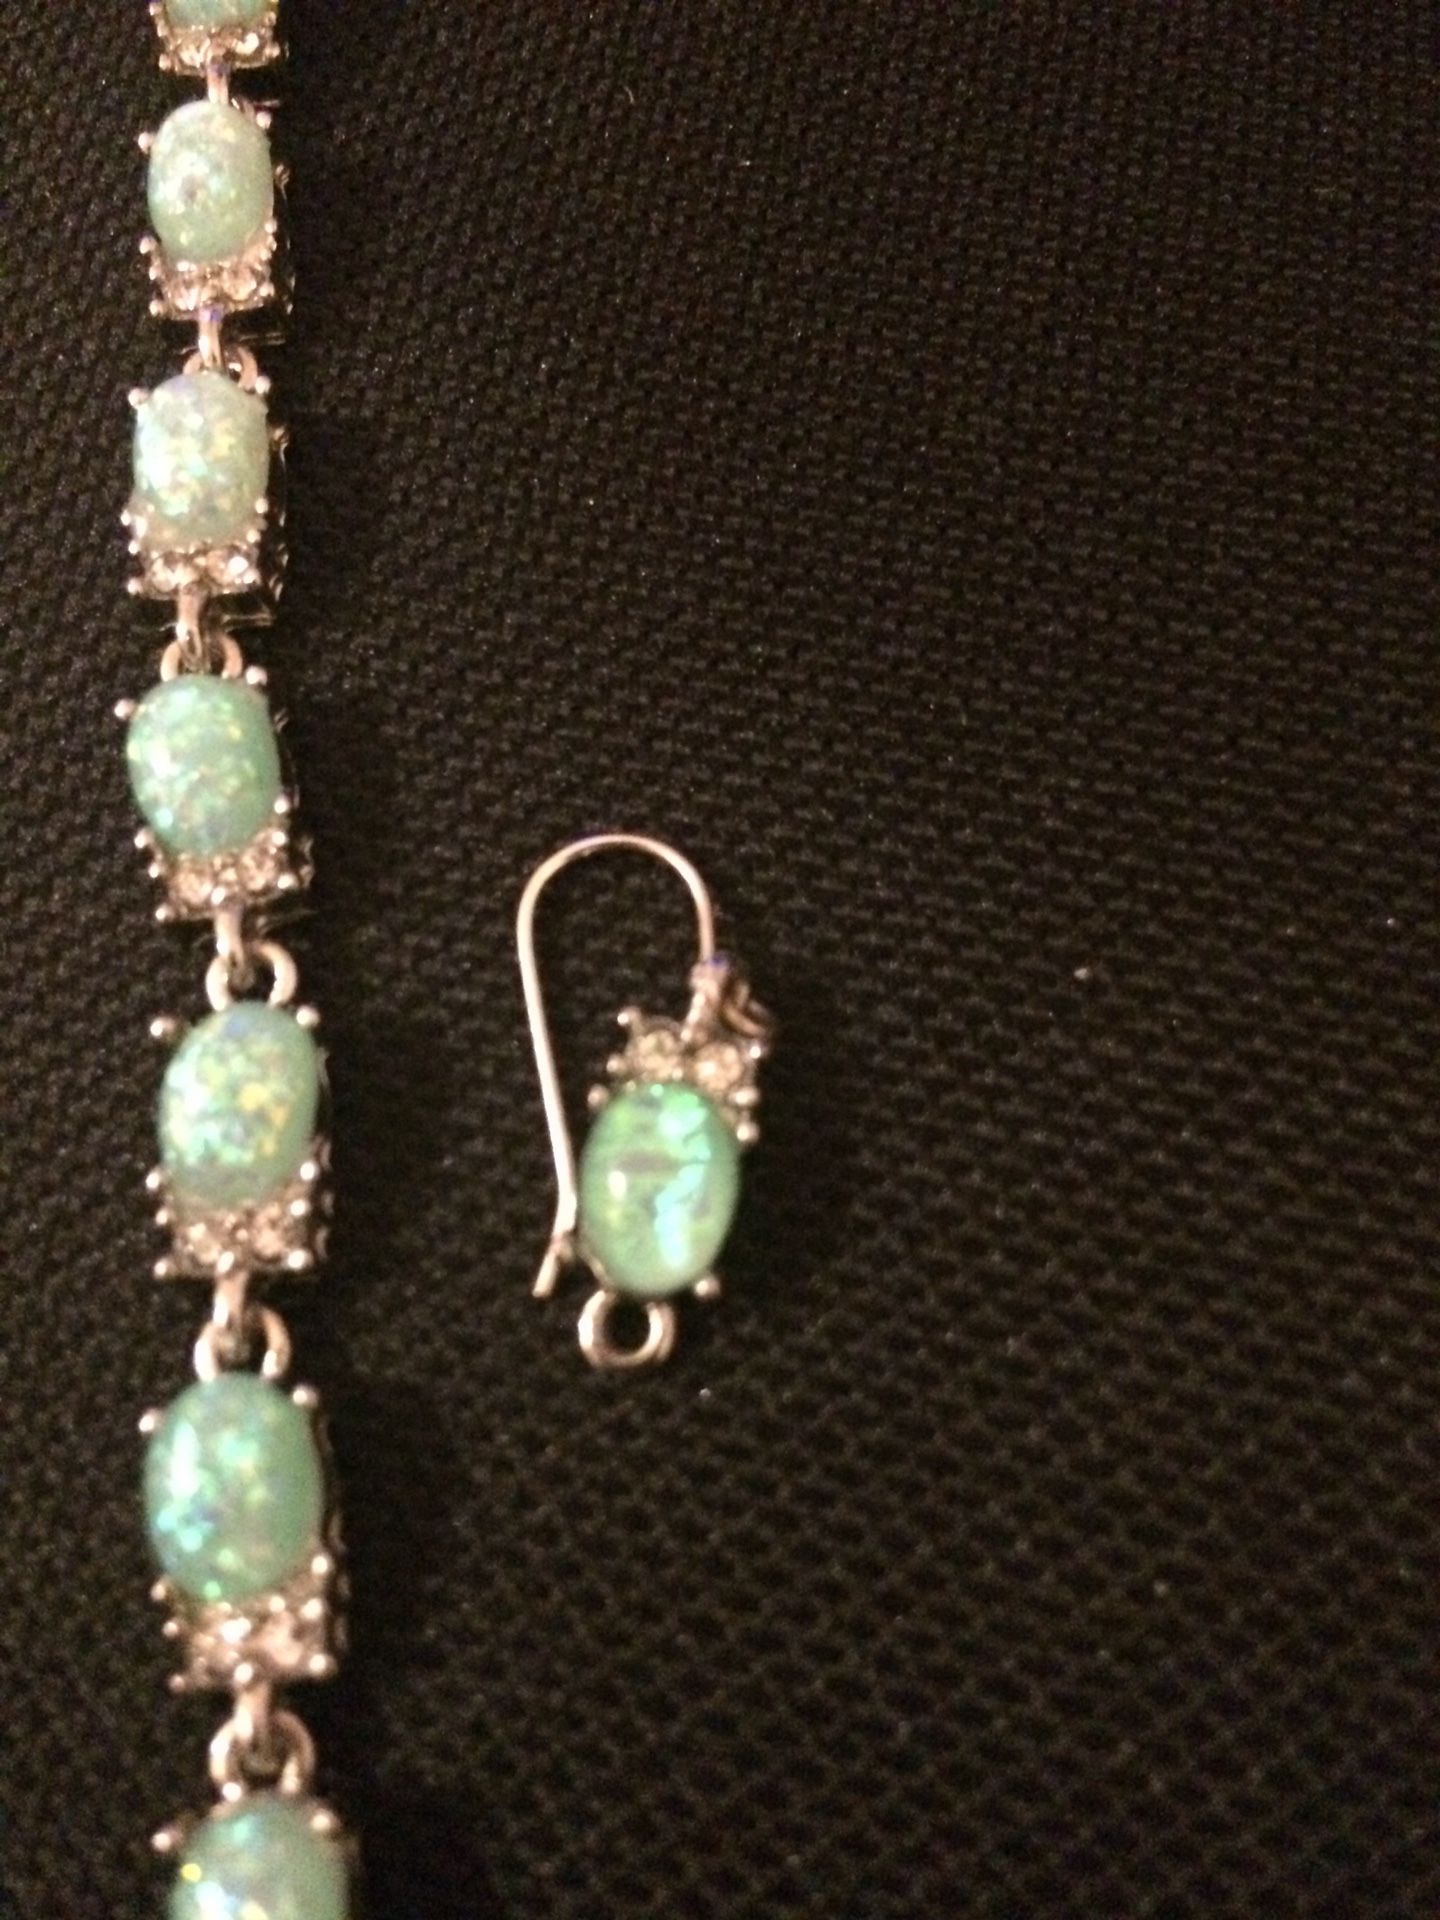 Opal bracelet and earring set